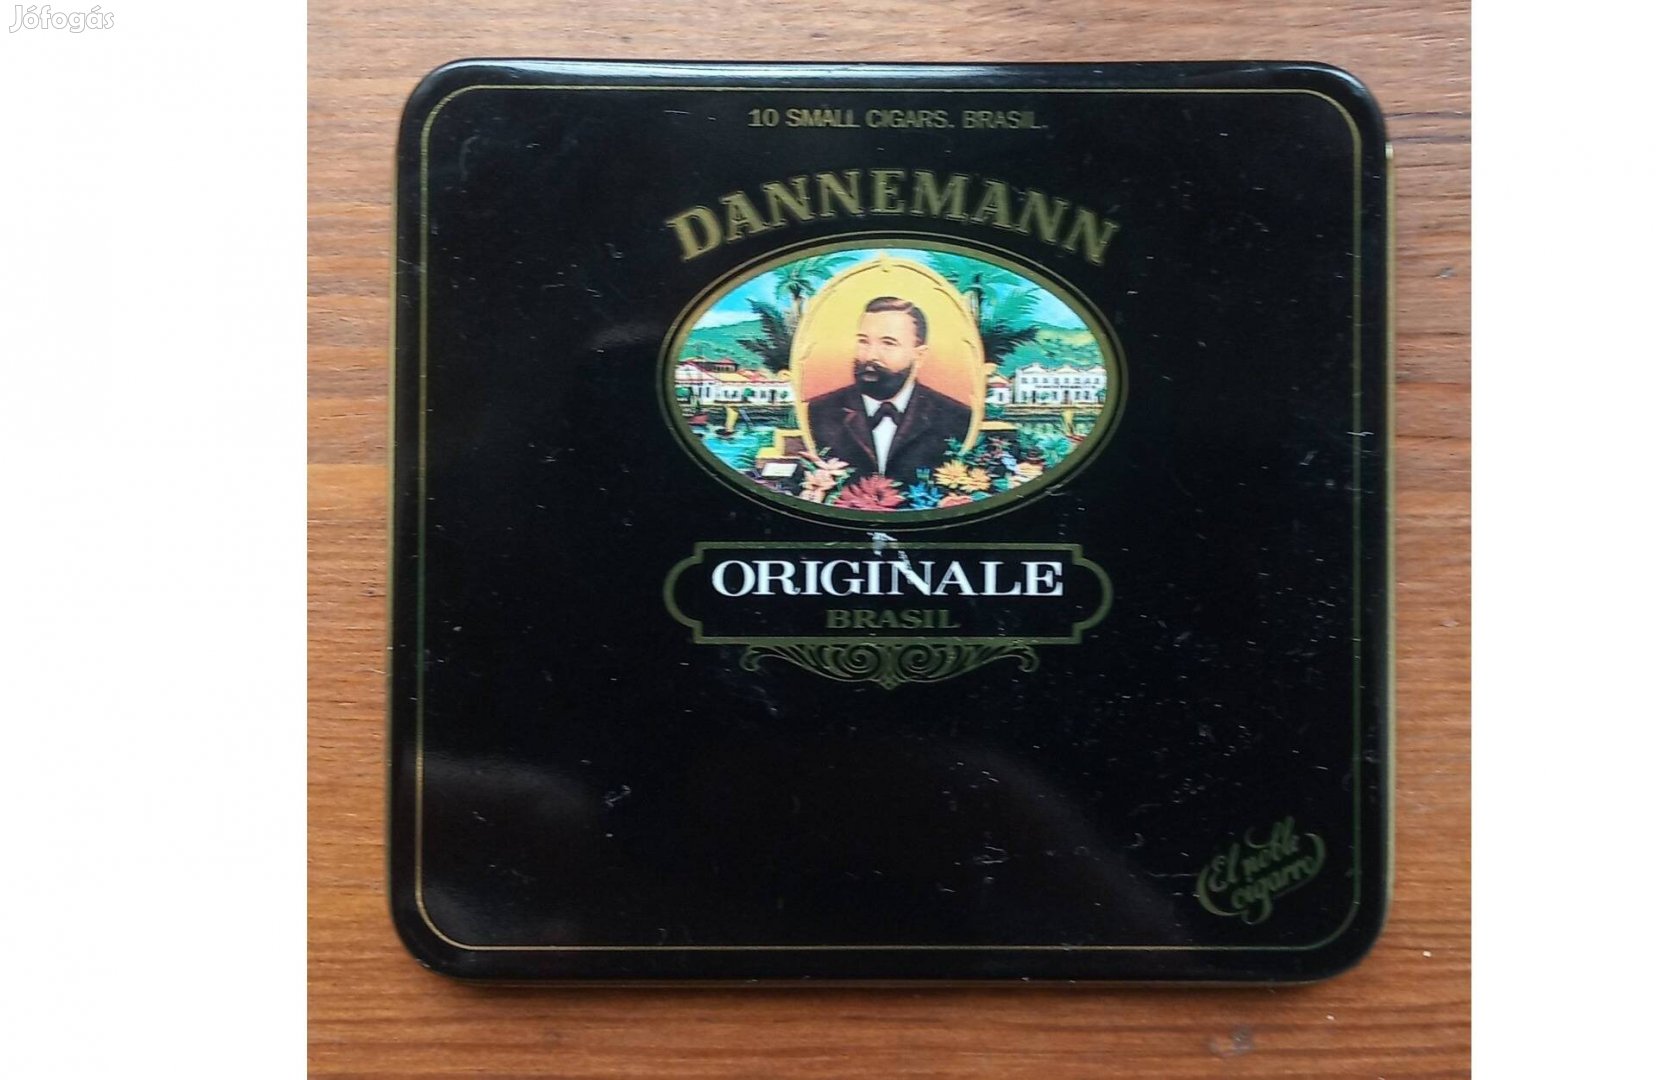 Dannemann Originale Brasil fém, új állapotban lévő szivaros doboz